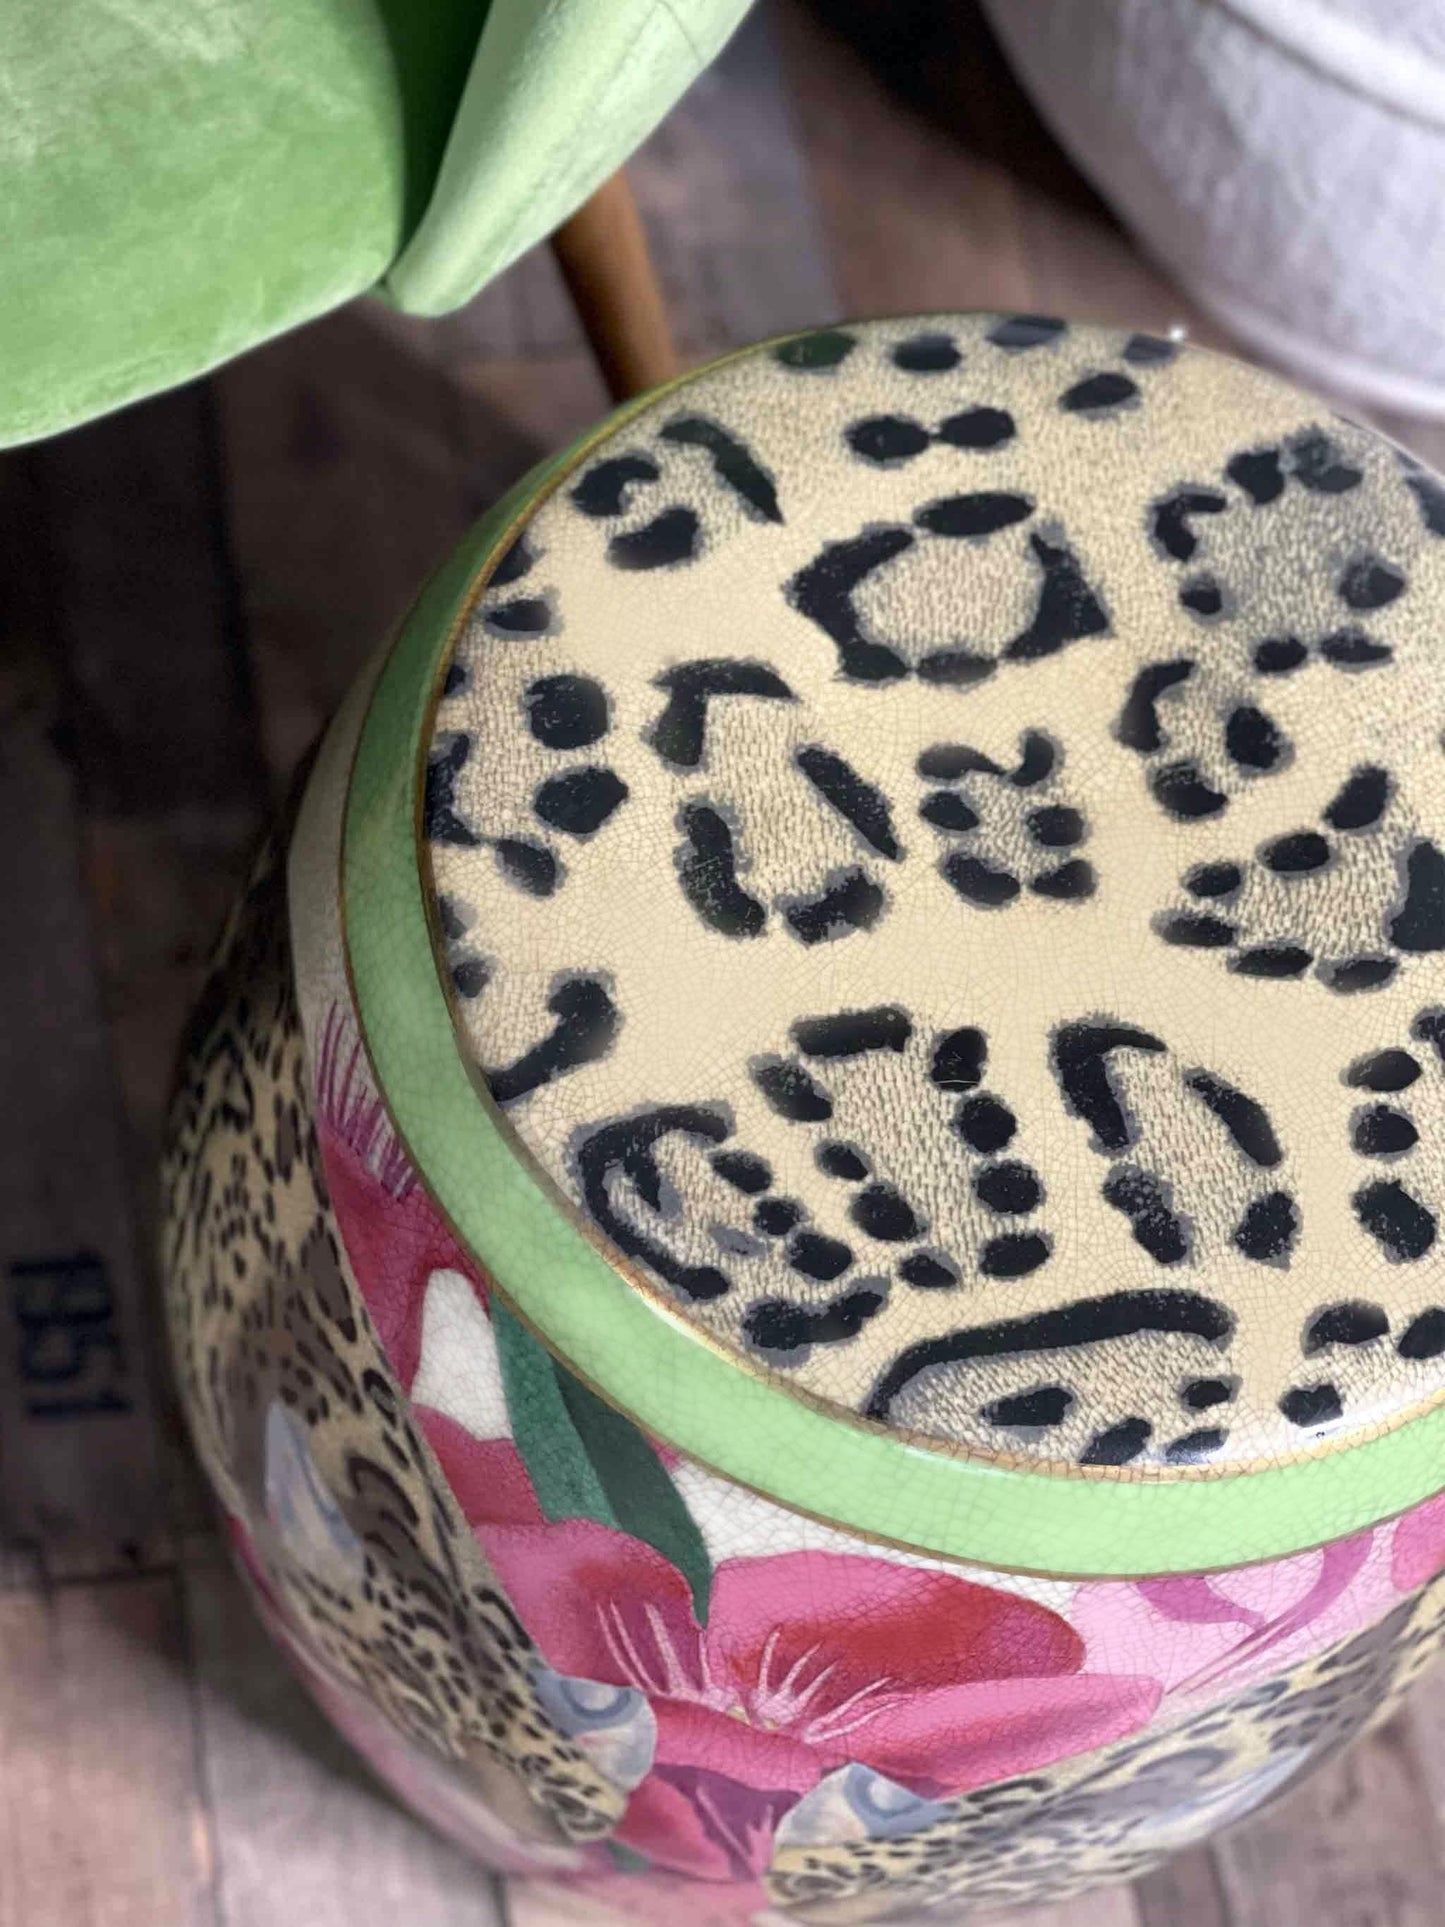 Porcelain Stool/Side Table Isla Jaguar by C.A.M